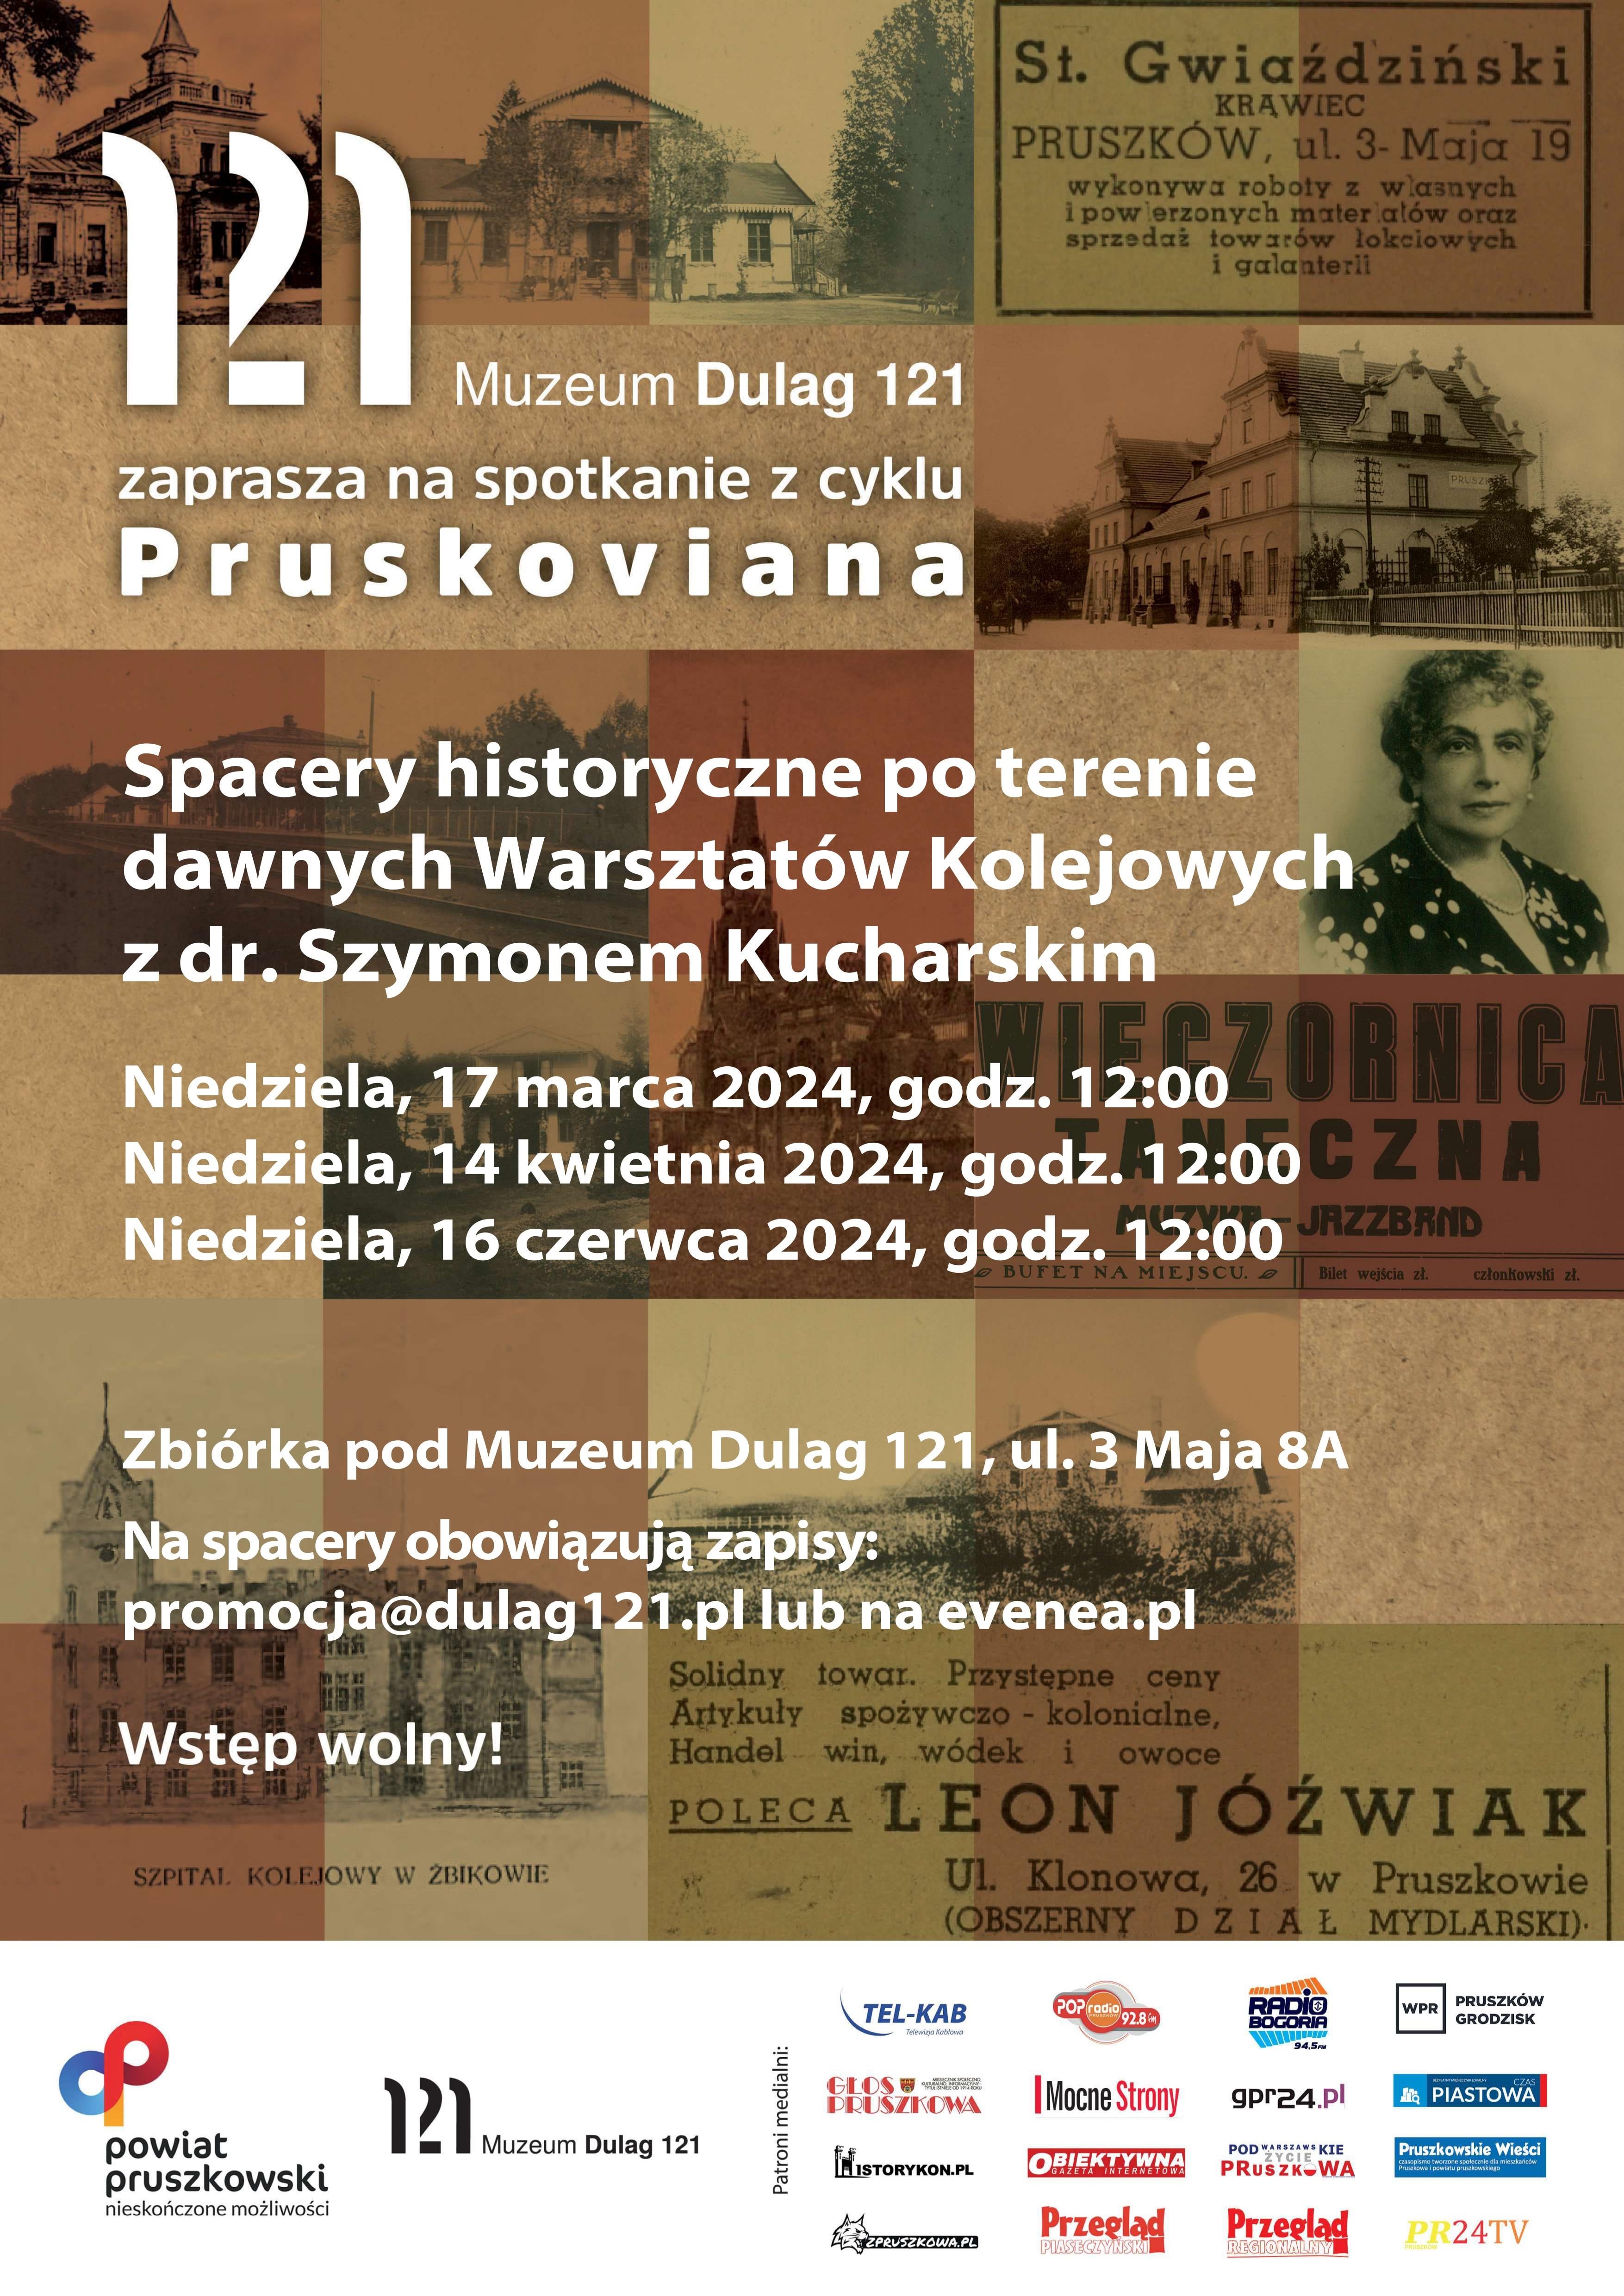 Warsztaty Kolei Warszawsko-Wiedeńskiej – spacer historyczny po dawnych ZNTK z Szymonem Kucharskim